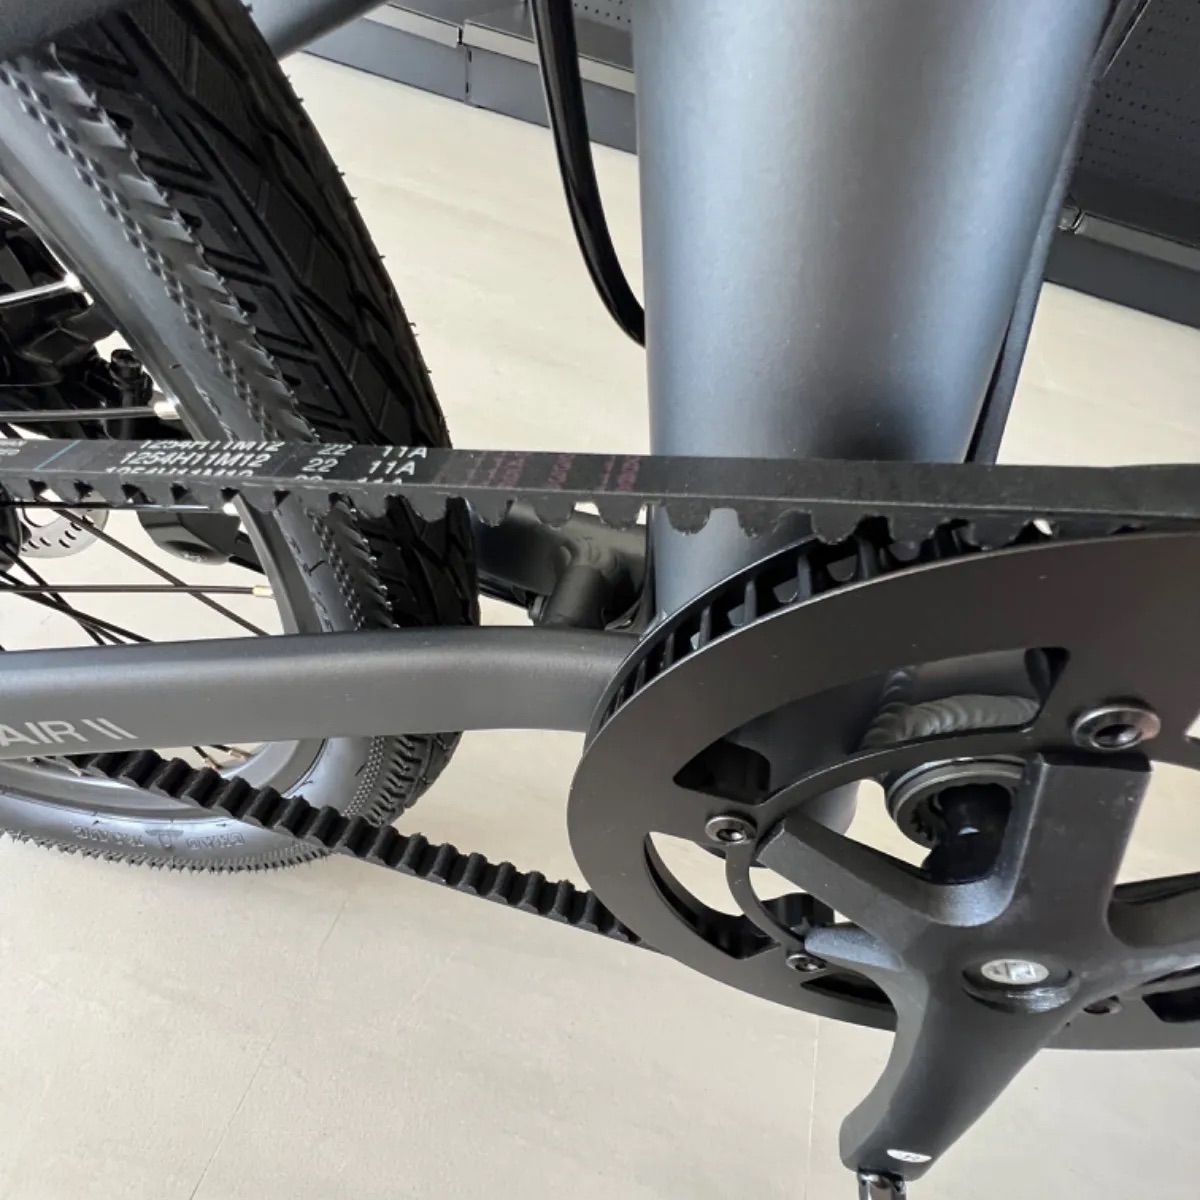 20インチ折り畳み電動アシスト自転車ADO EBIKE Lite グレー - 自転車本体